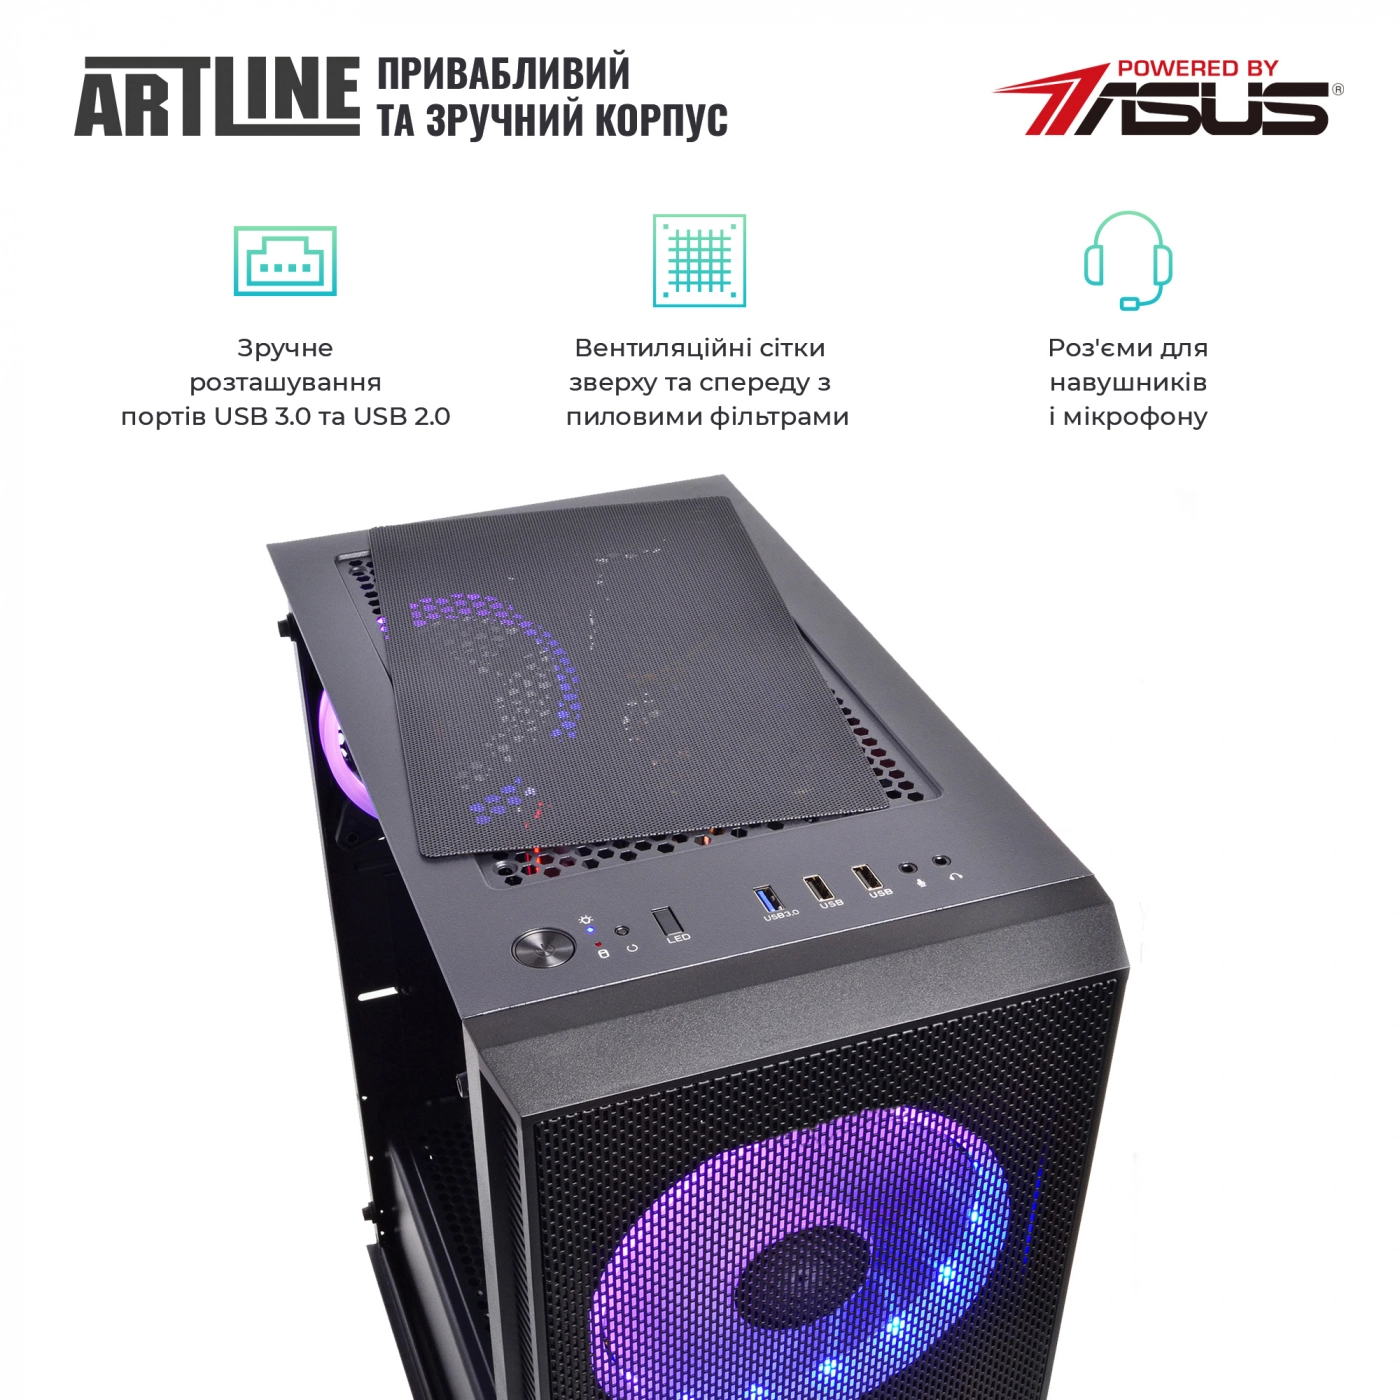 Купить Компьютер ARTLINE Gaming X35v46 - фото 4